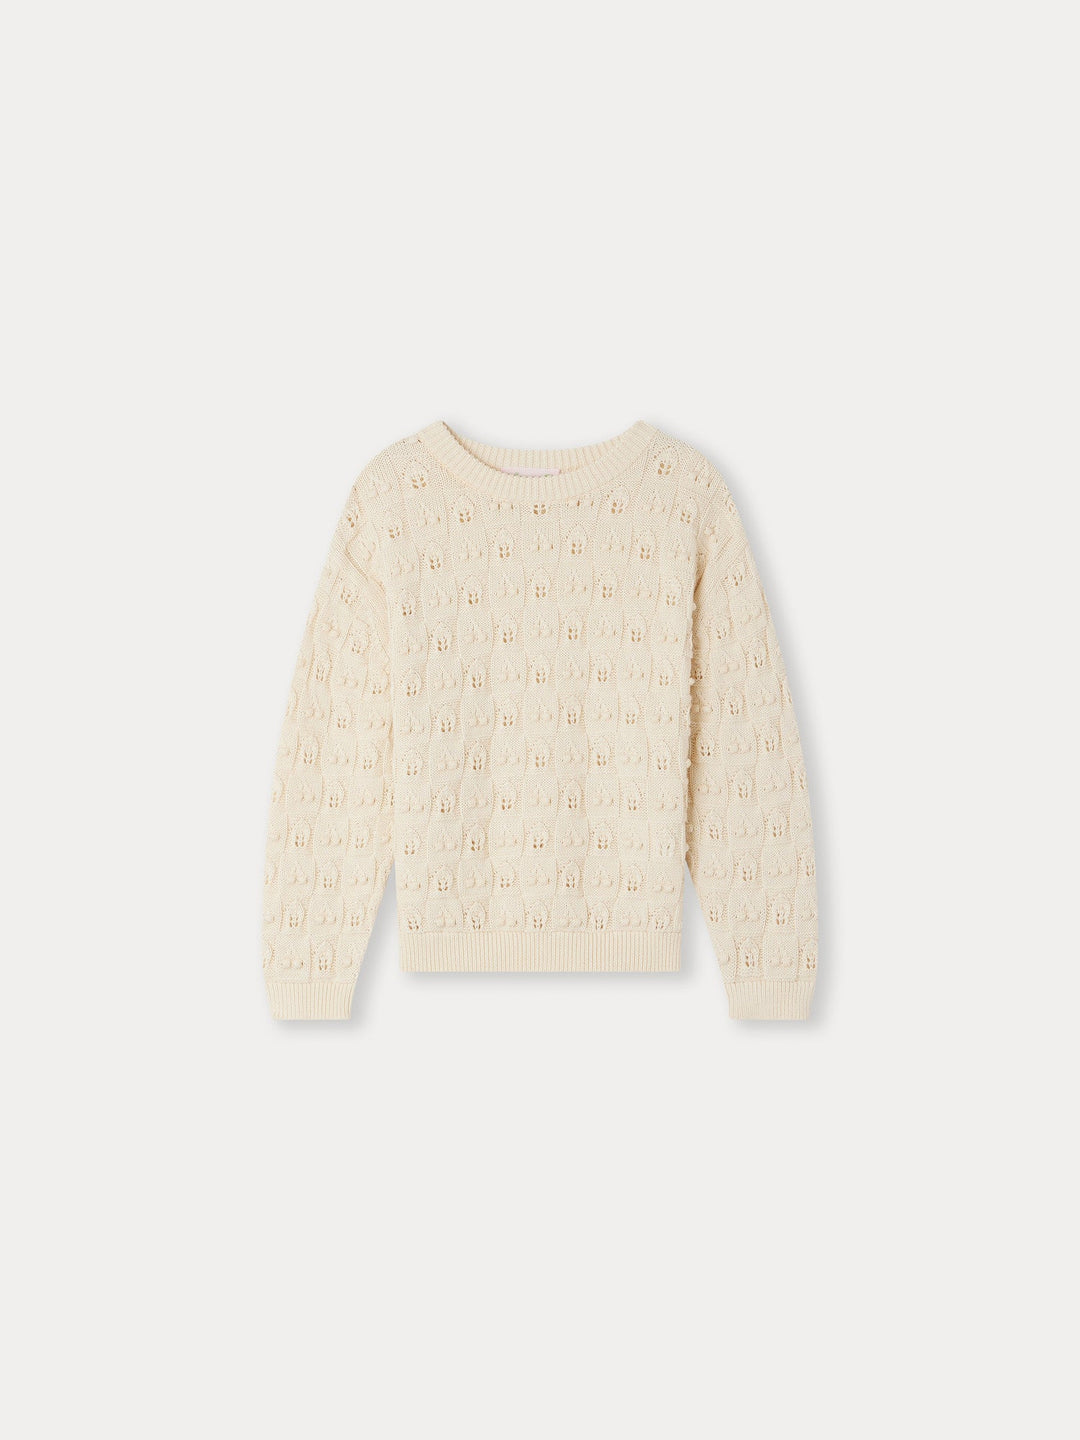 Anumati Sweater - Ecru - Posh New York